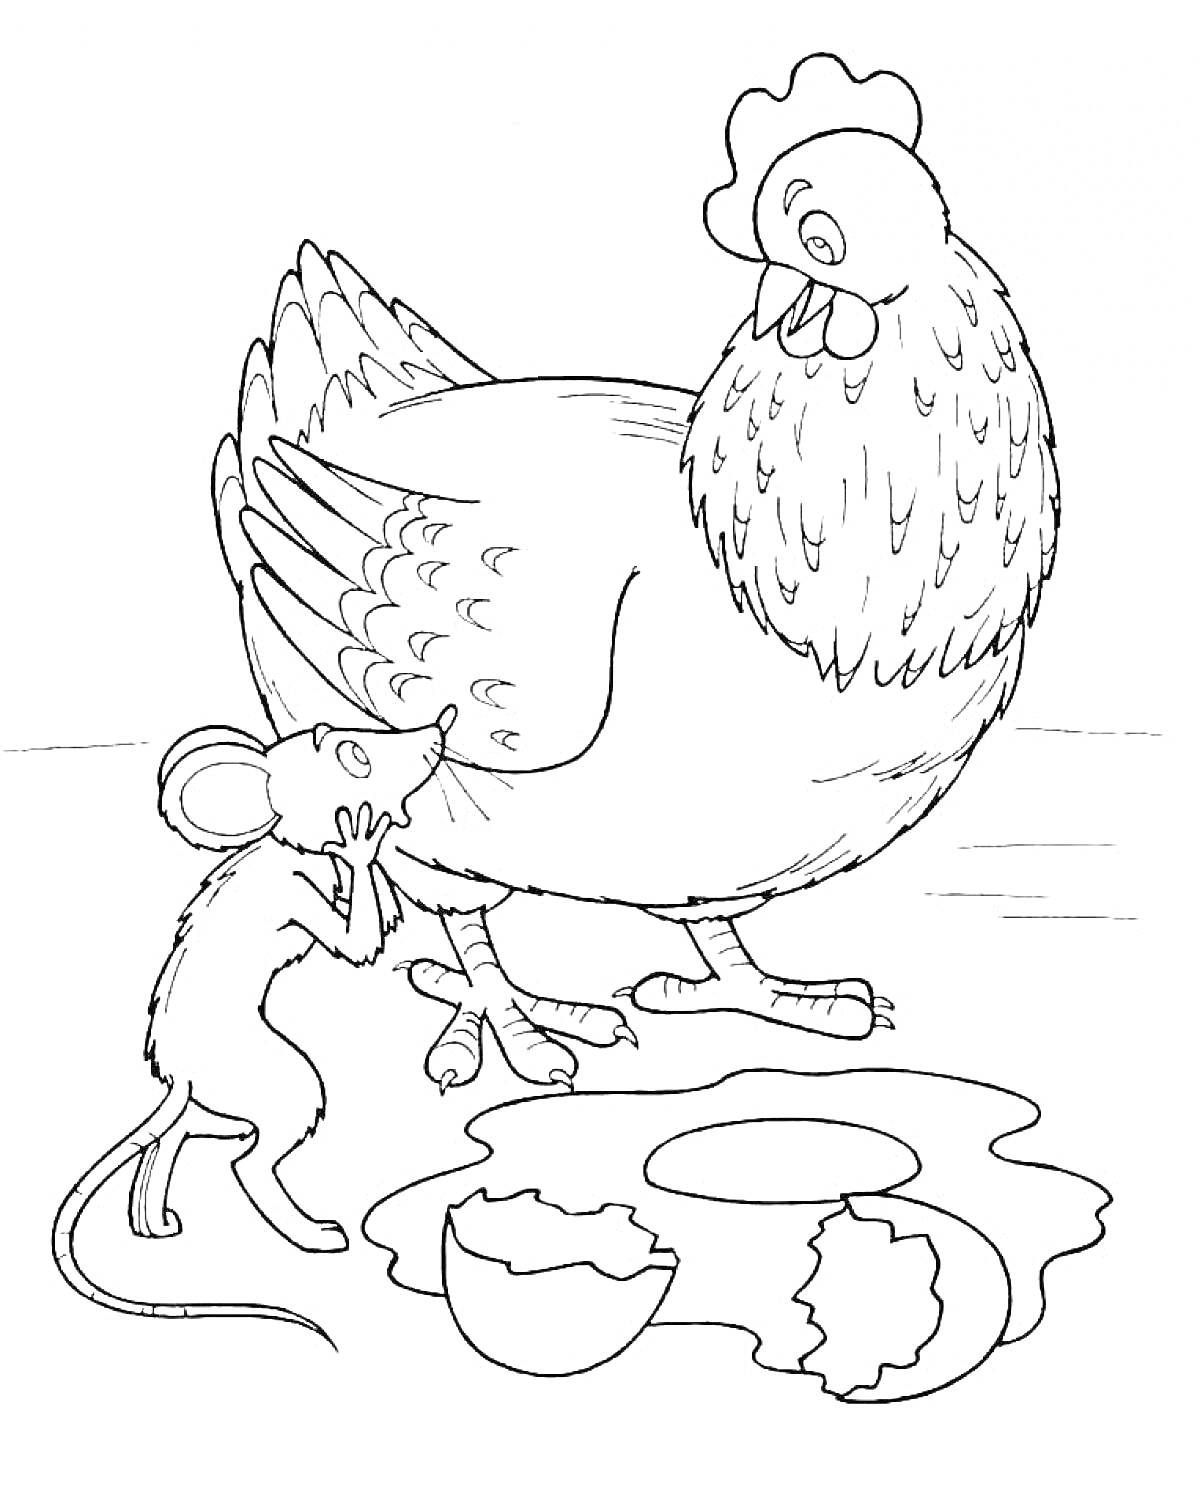 Курица и мышка рядом с разбитым яйцом